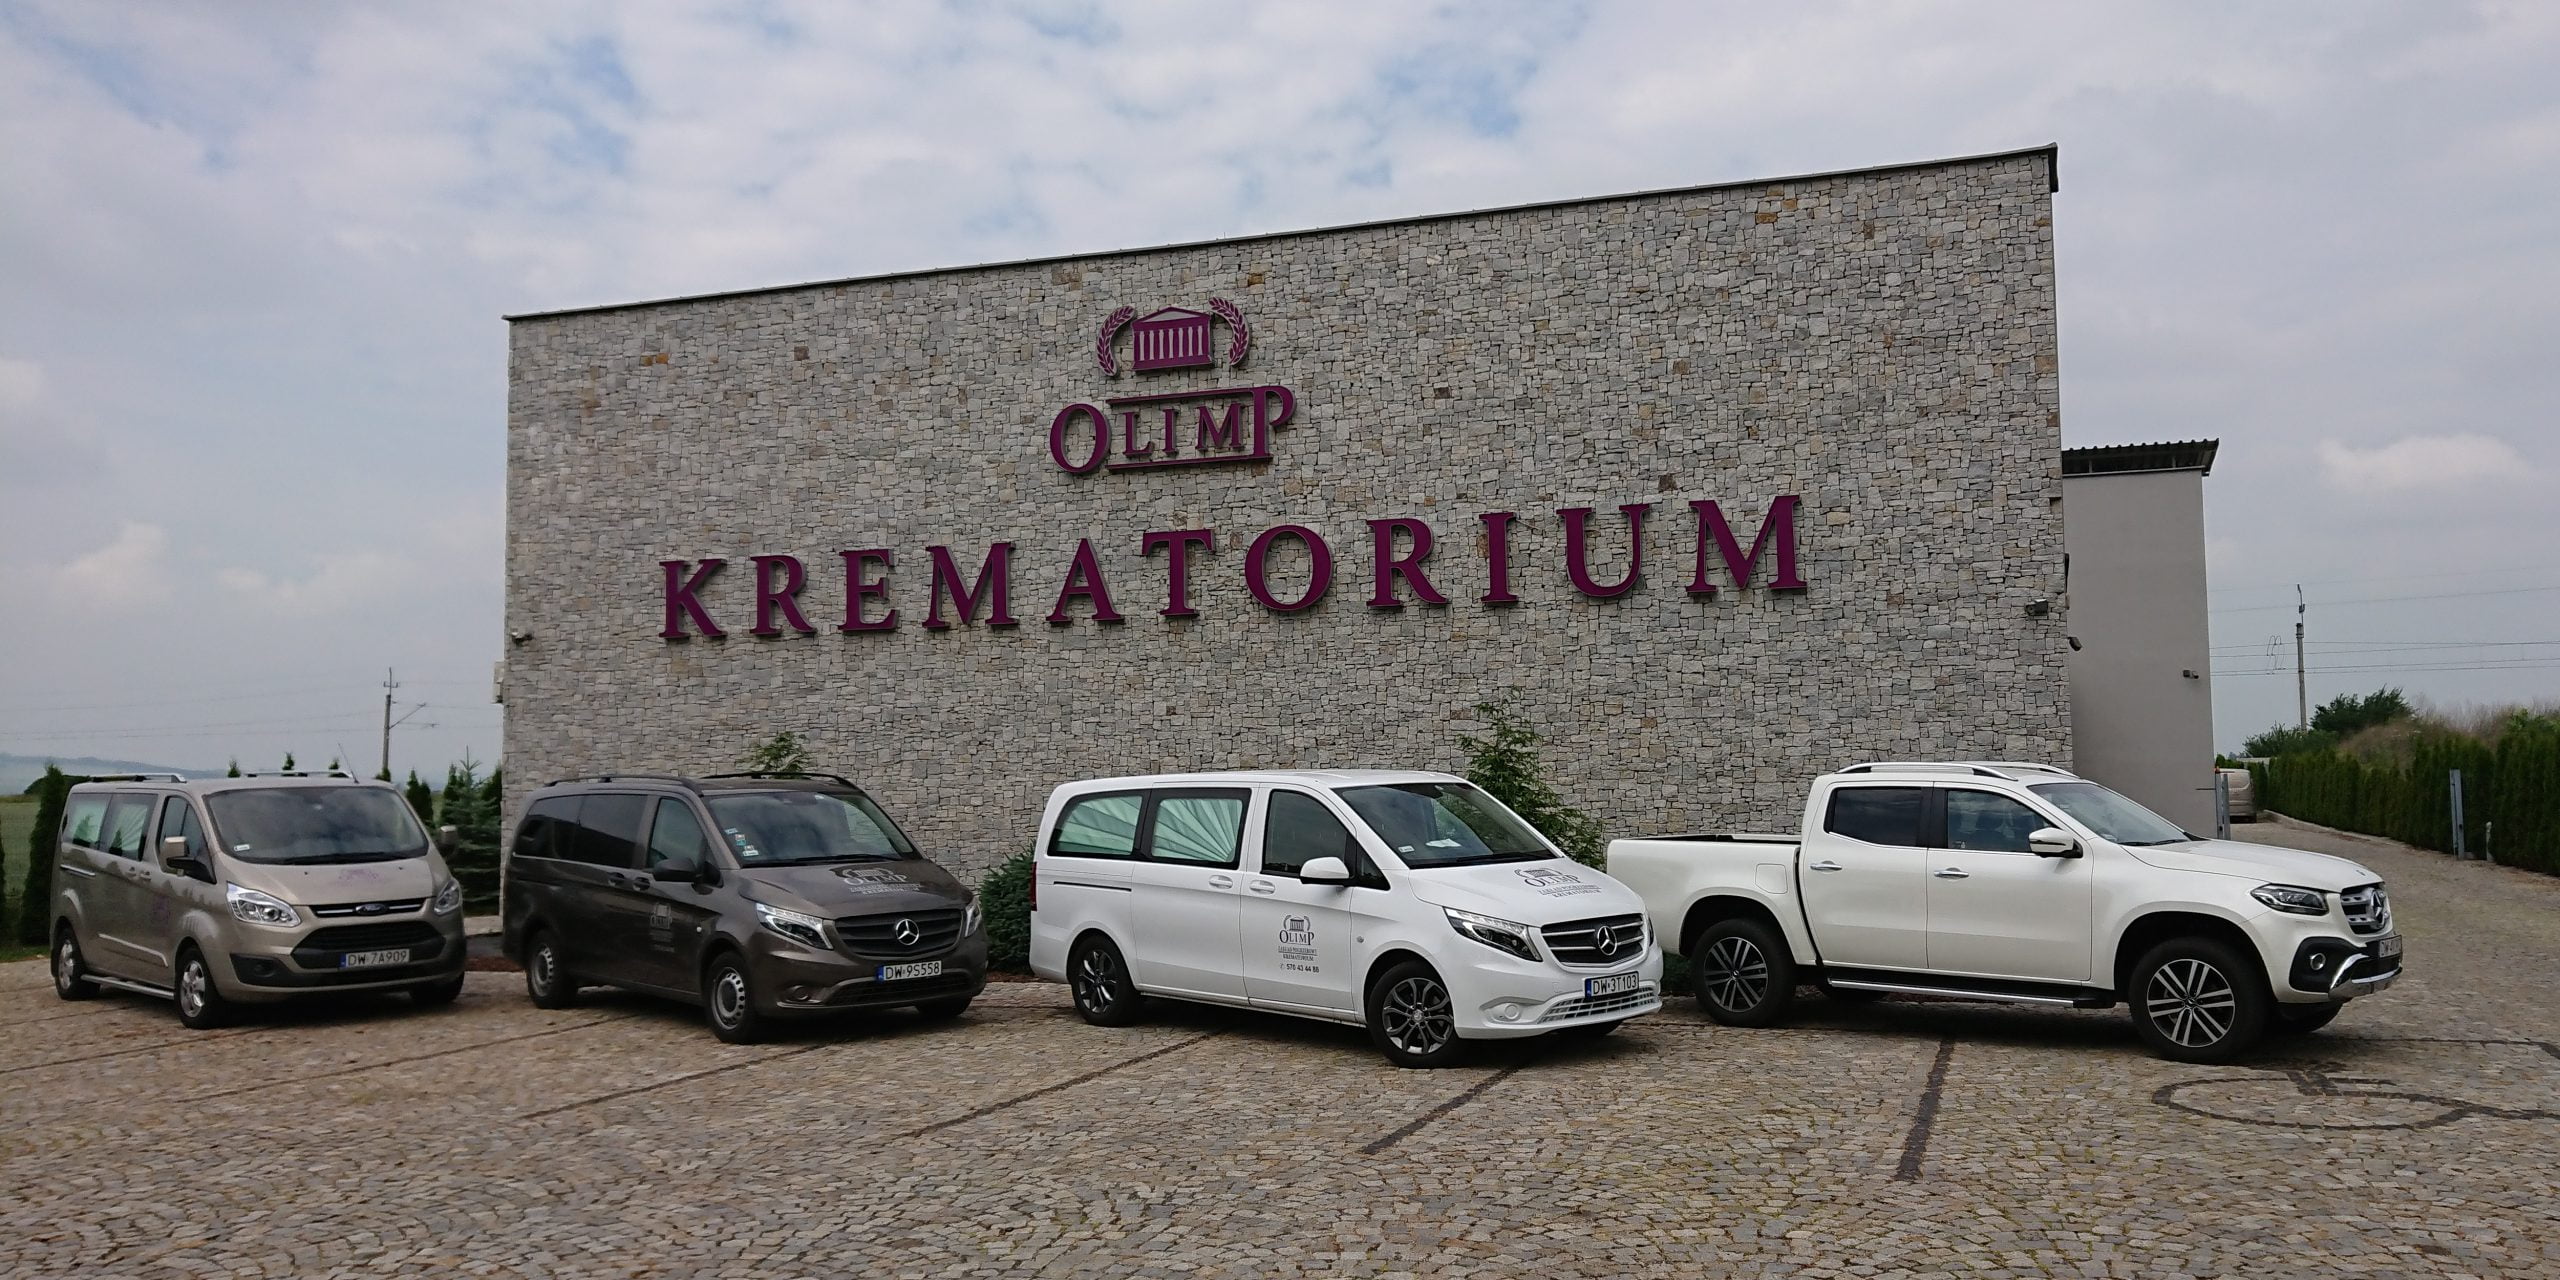 krematorium w Strzelinie